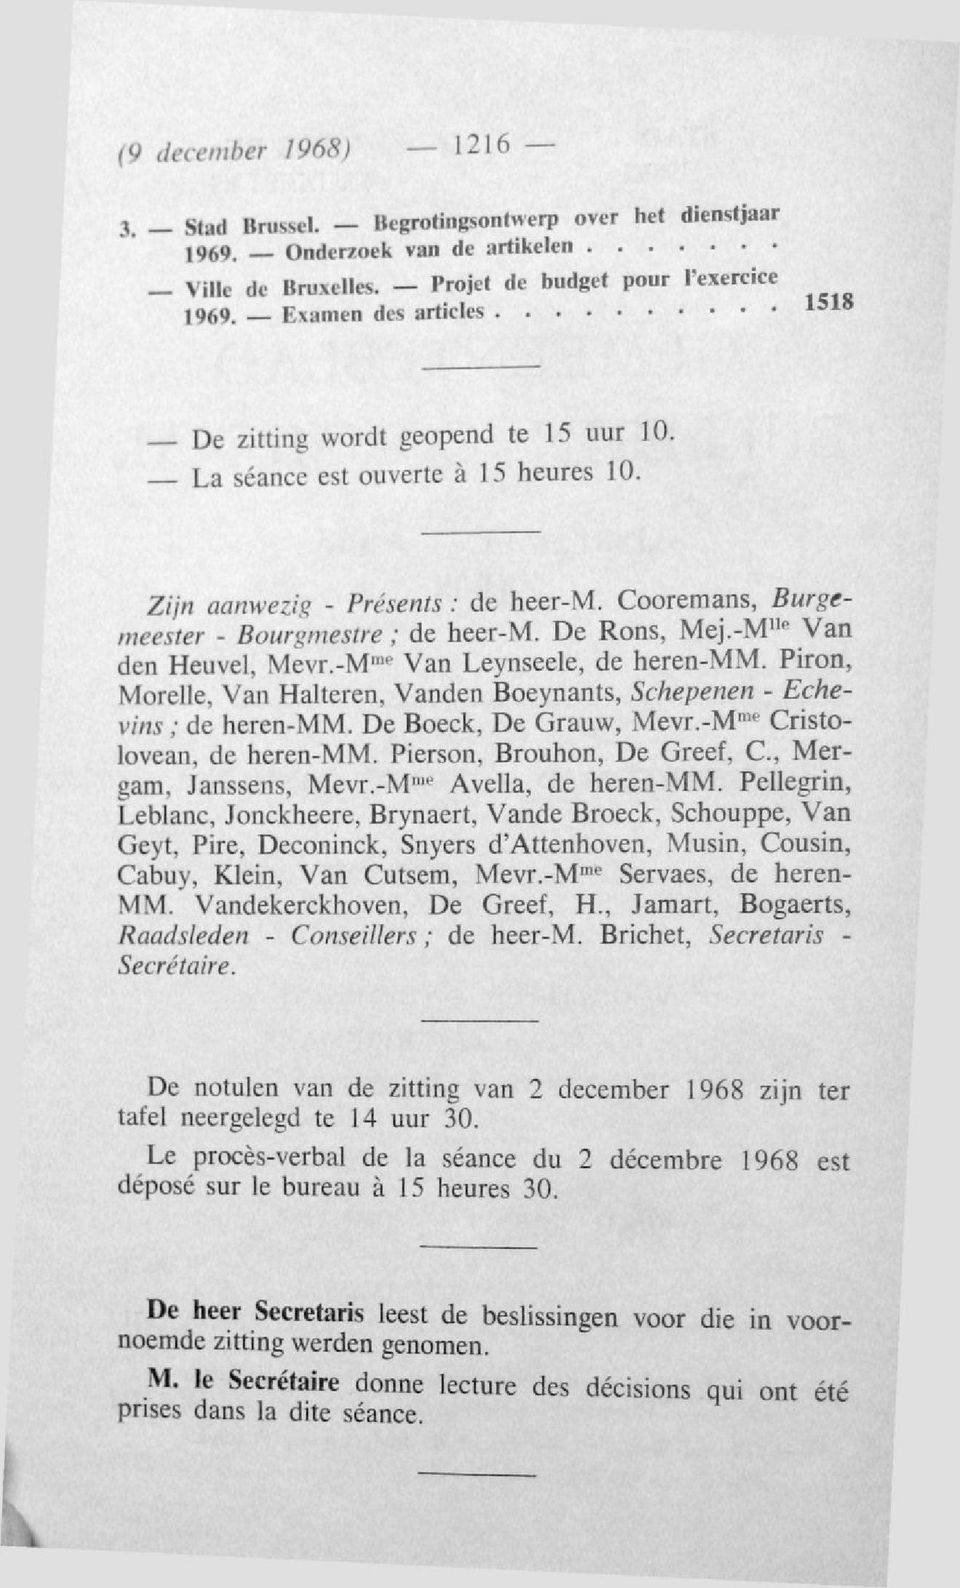 De Rons, Mej.-M llc Van den Heuvel, Mevr.-M me Van Leynseele, de heren-mm. Piron, Morelle, Van Halteren, Vanden Boeynants, Schepenen - Echevins ; de heren-mm. De Boeck, De Grauw, Mevr.